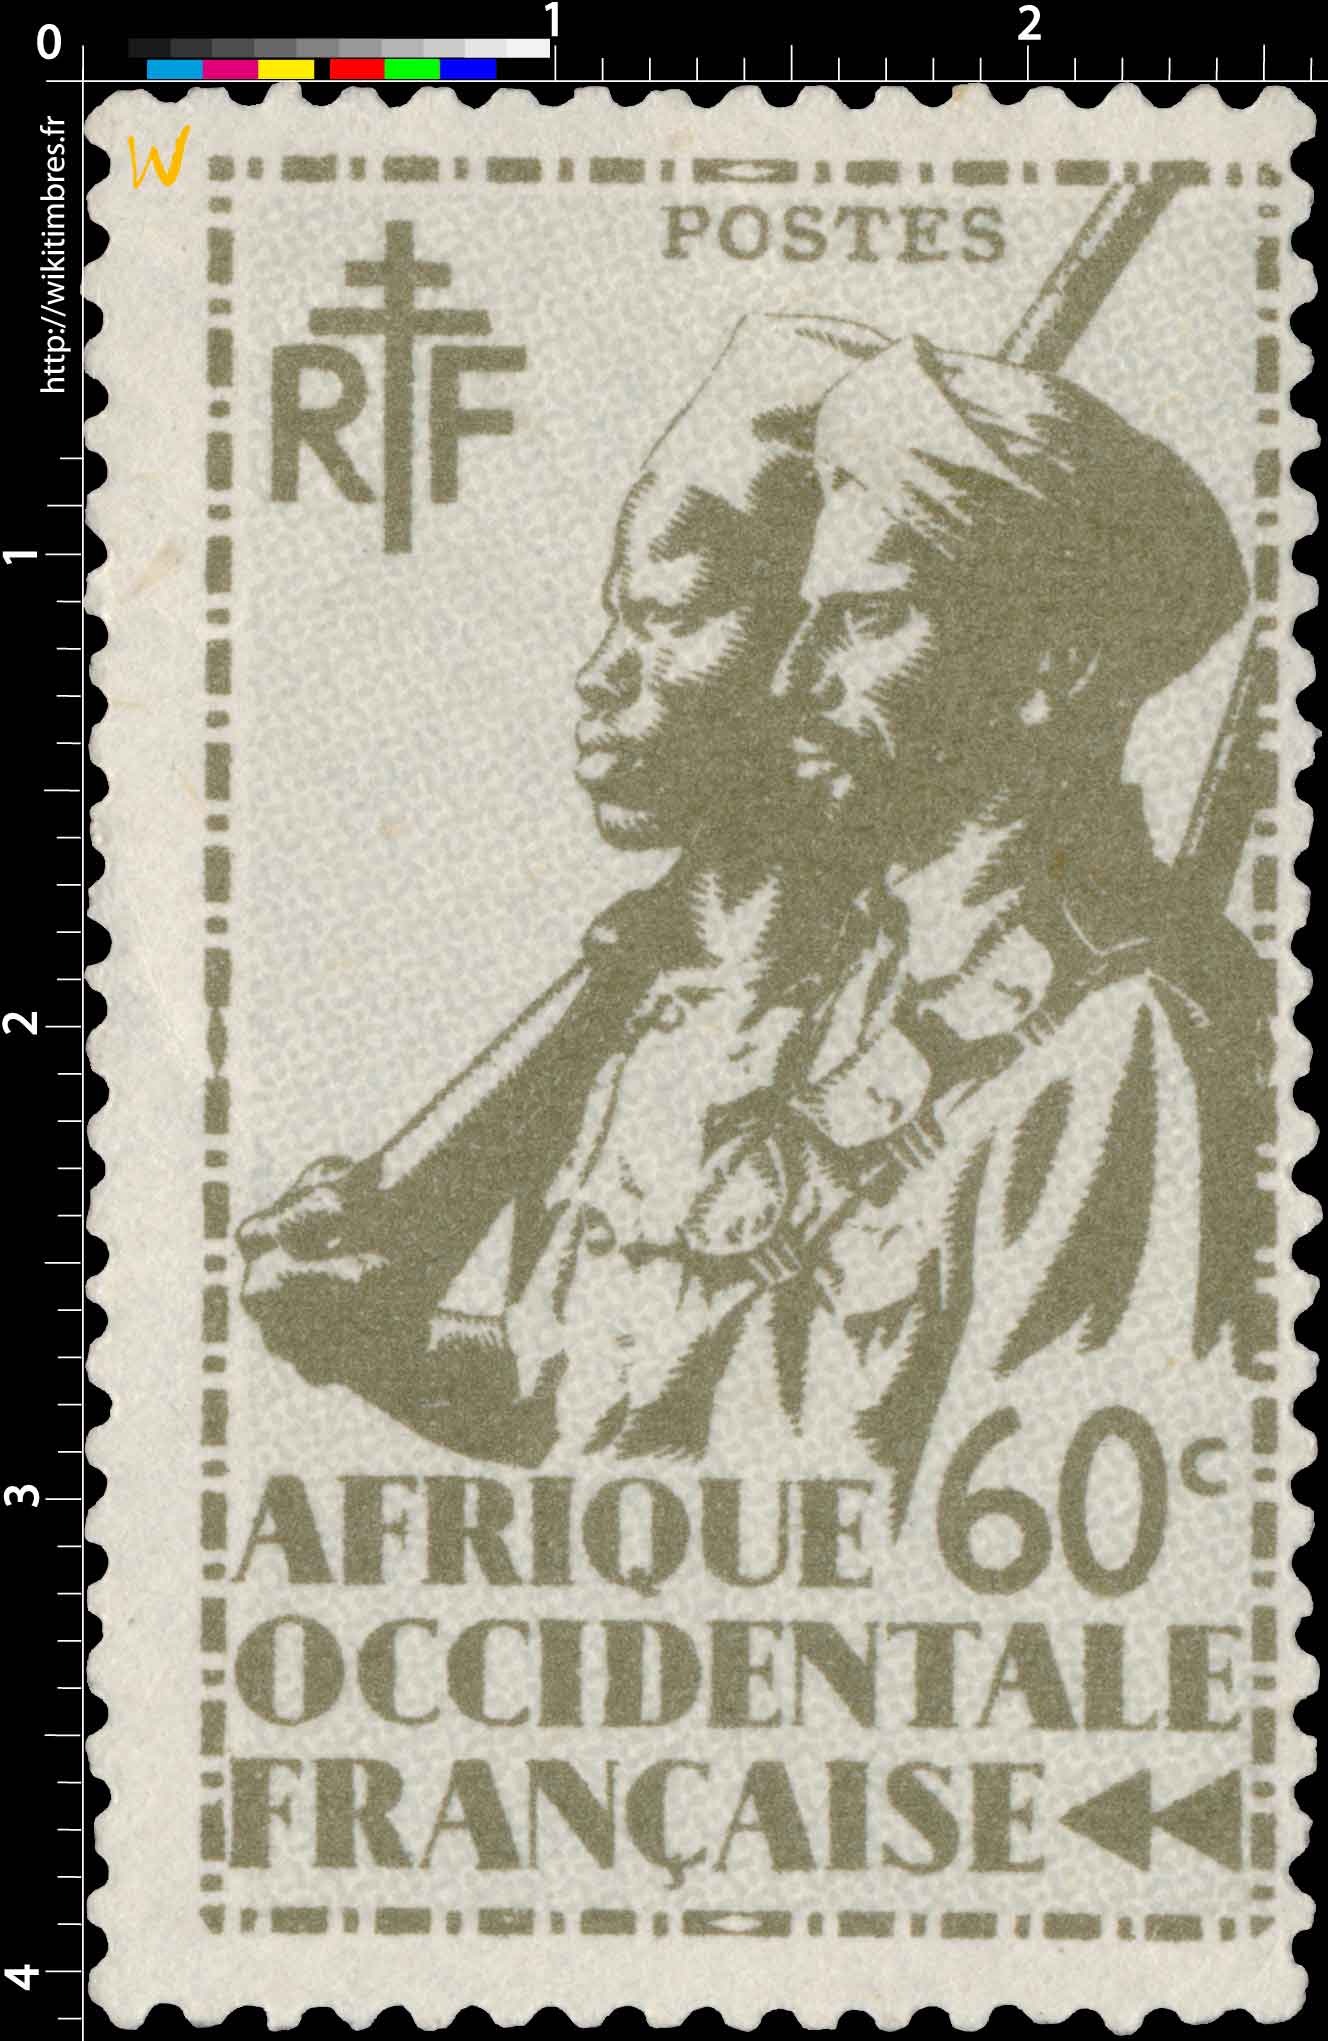  Afrique Occidentale Française - type tirailleur Sénégalais et cavalier Maure